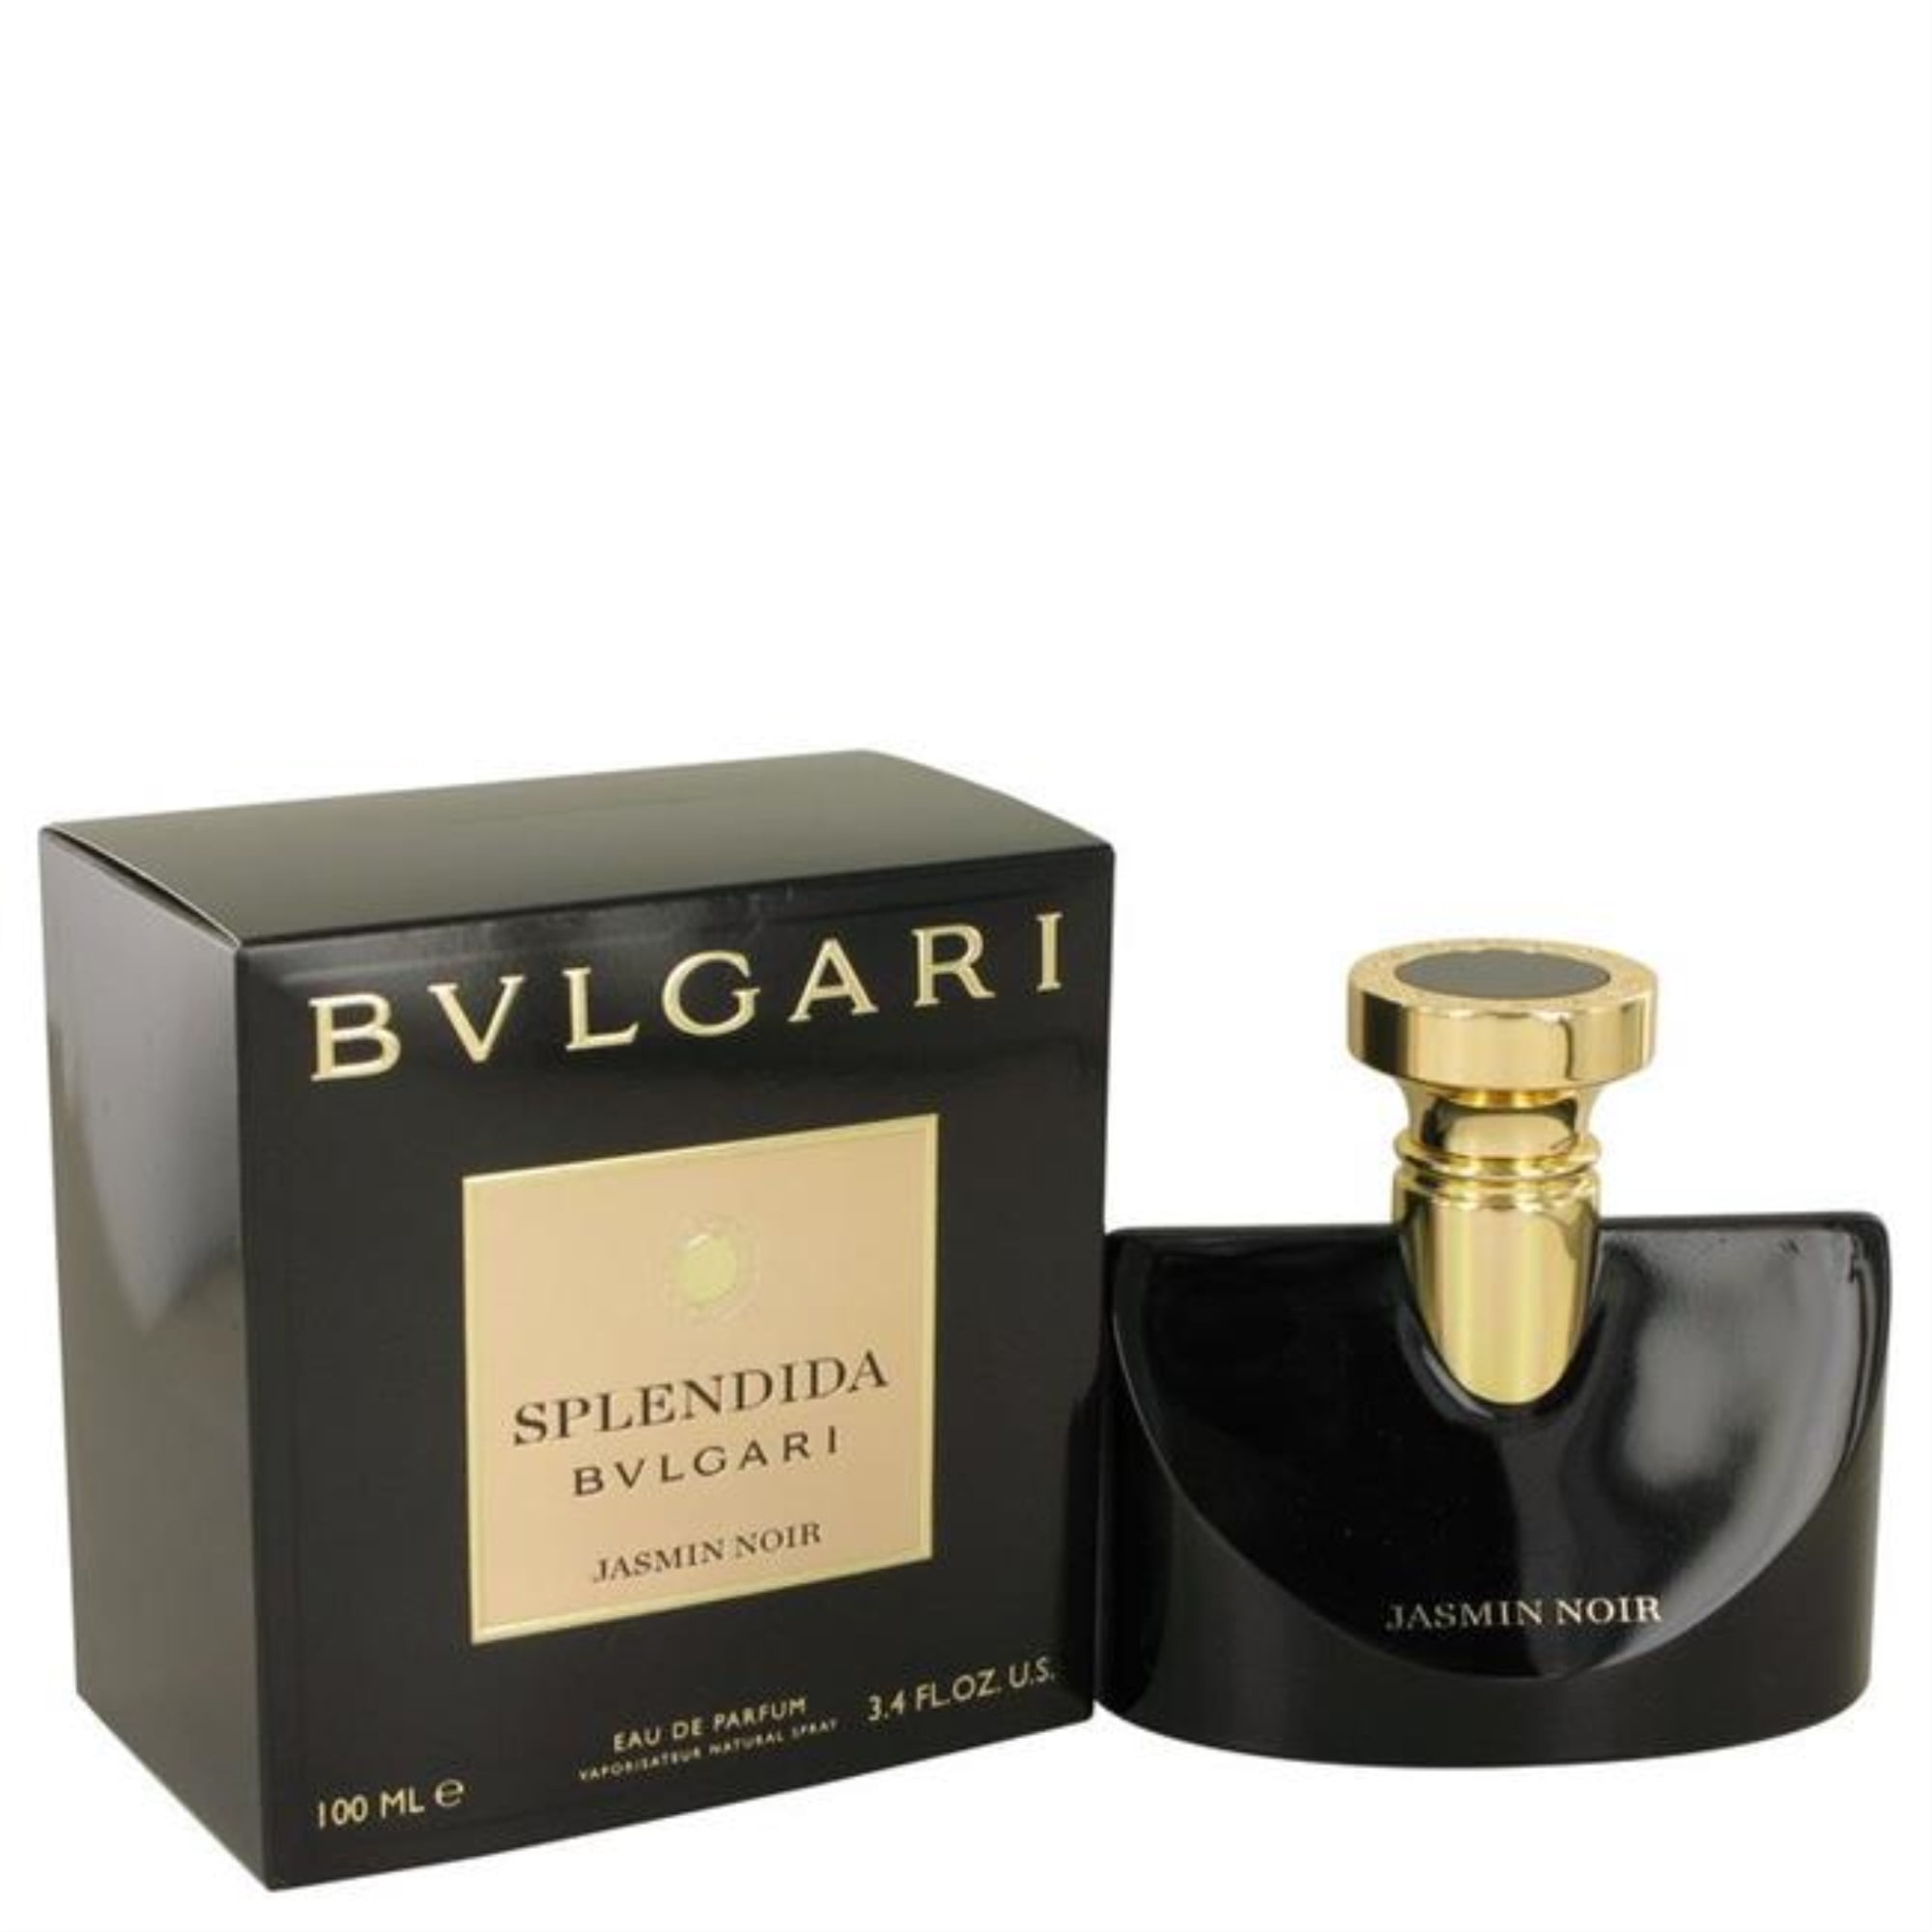 bvlgari splendida jasmin noir eau de parfum 100ml